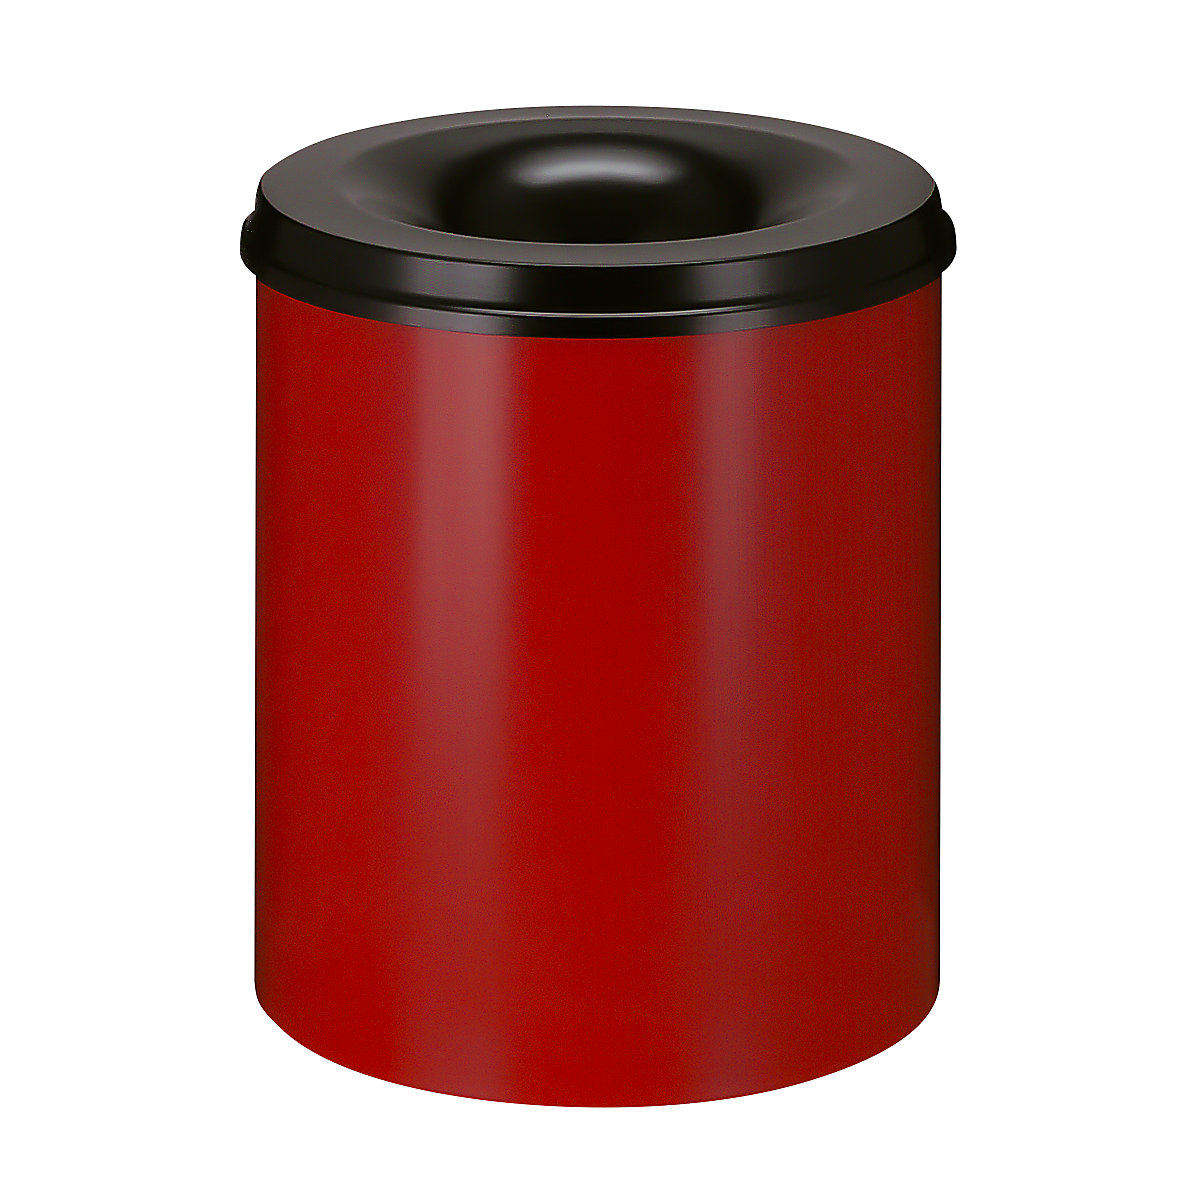 Koš na papír, samozhášecí, objem 80 l, v x Ø 540 x 465 mm, korpus červená / hasicí hlava černá